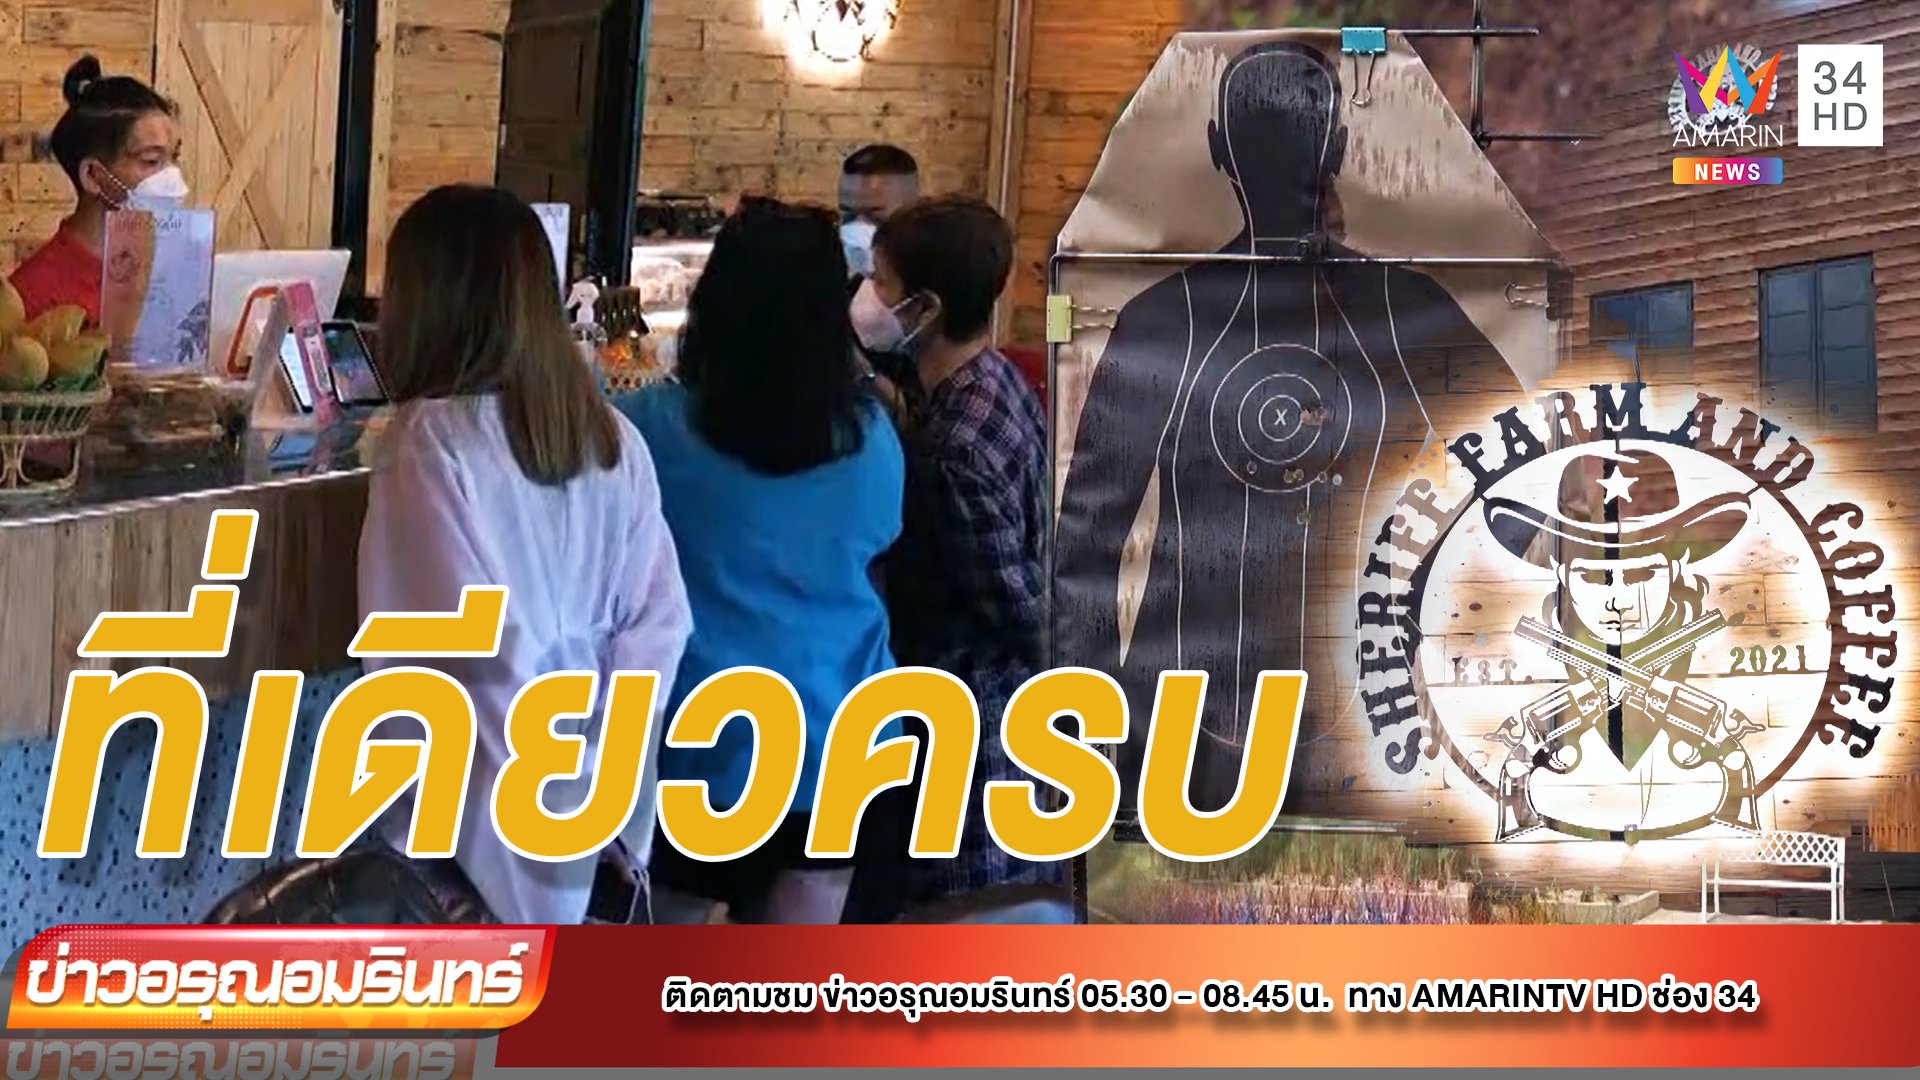 Sheriff Farm And Coffee เช็กอินกินเที่ยว ฟาร์มองุ่น ยิงปืน | ข่าวอรุณอมรินทร์ | 25 เม.ย. 65 | AMARIN TVHD34